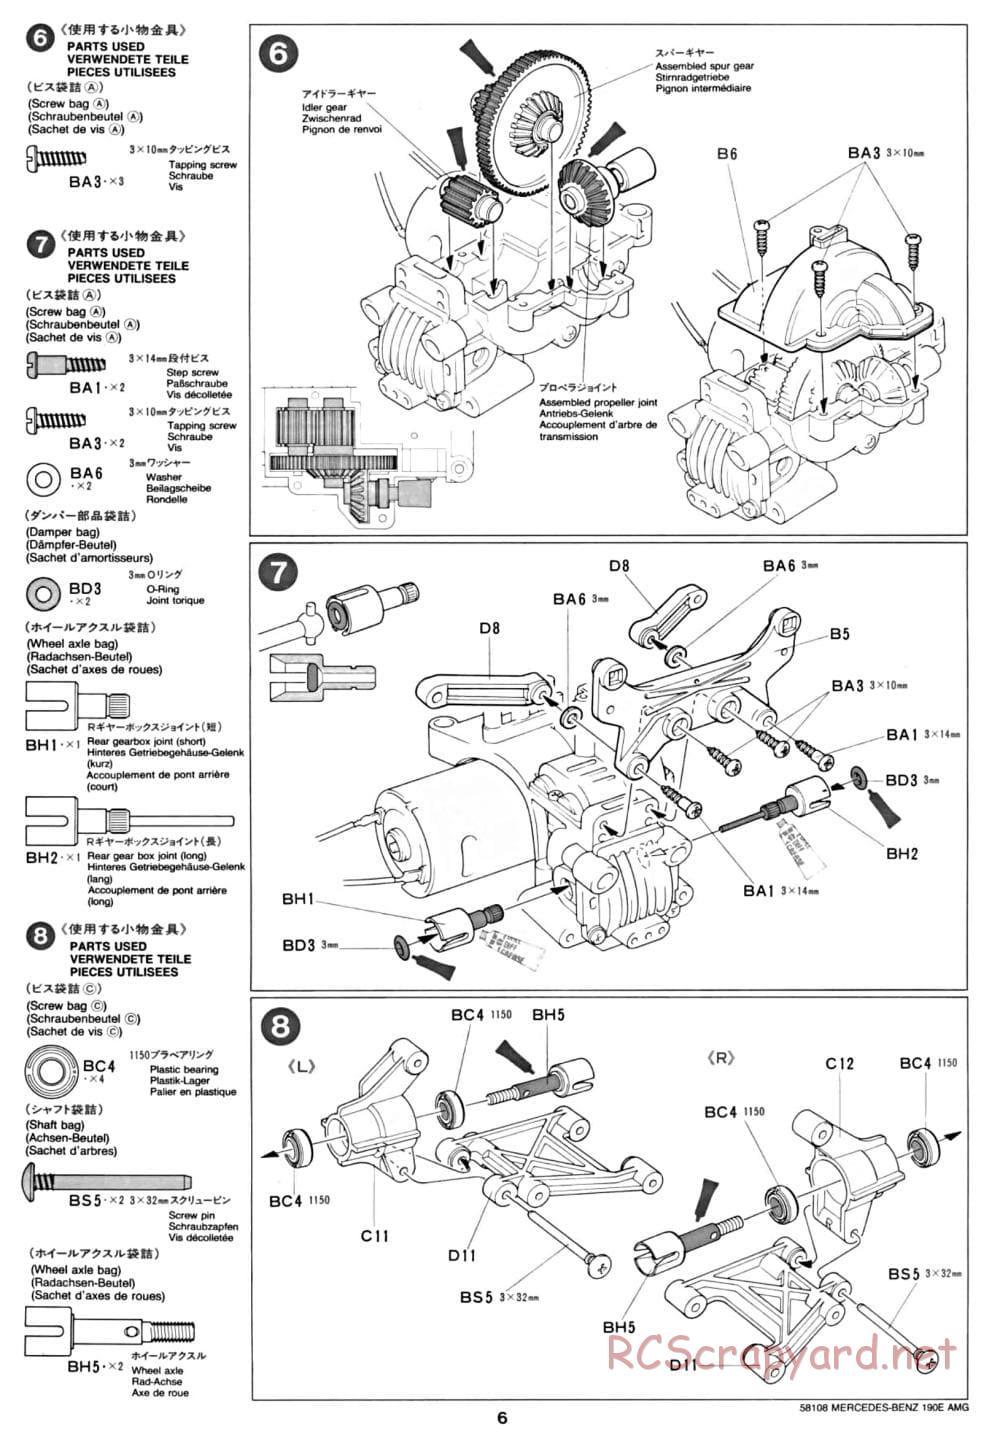 Tamiya - Mercedes Benz 190E Evo.II AMG - TA-01 Chassis - Manual - Page 6